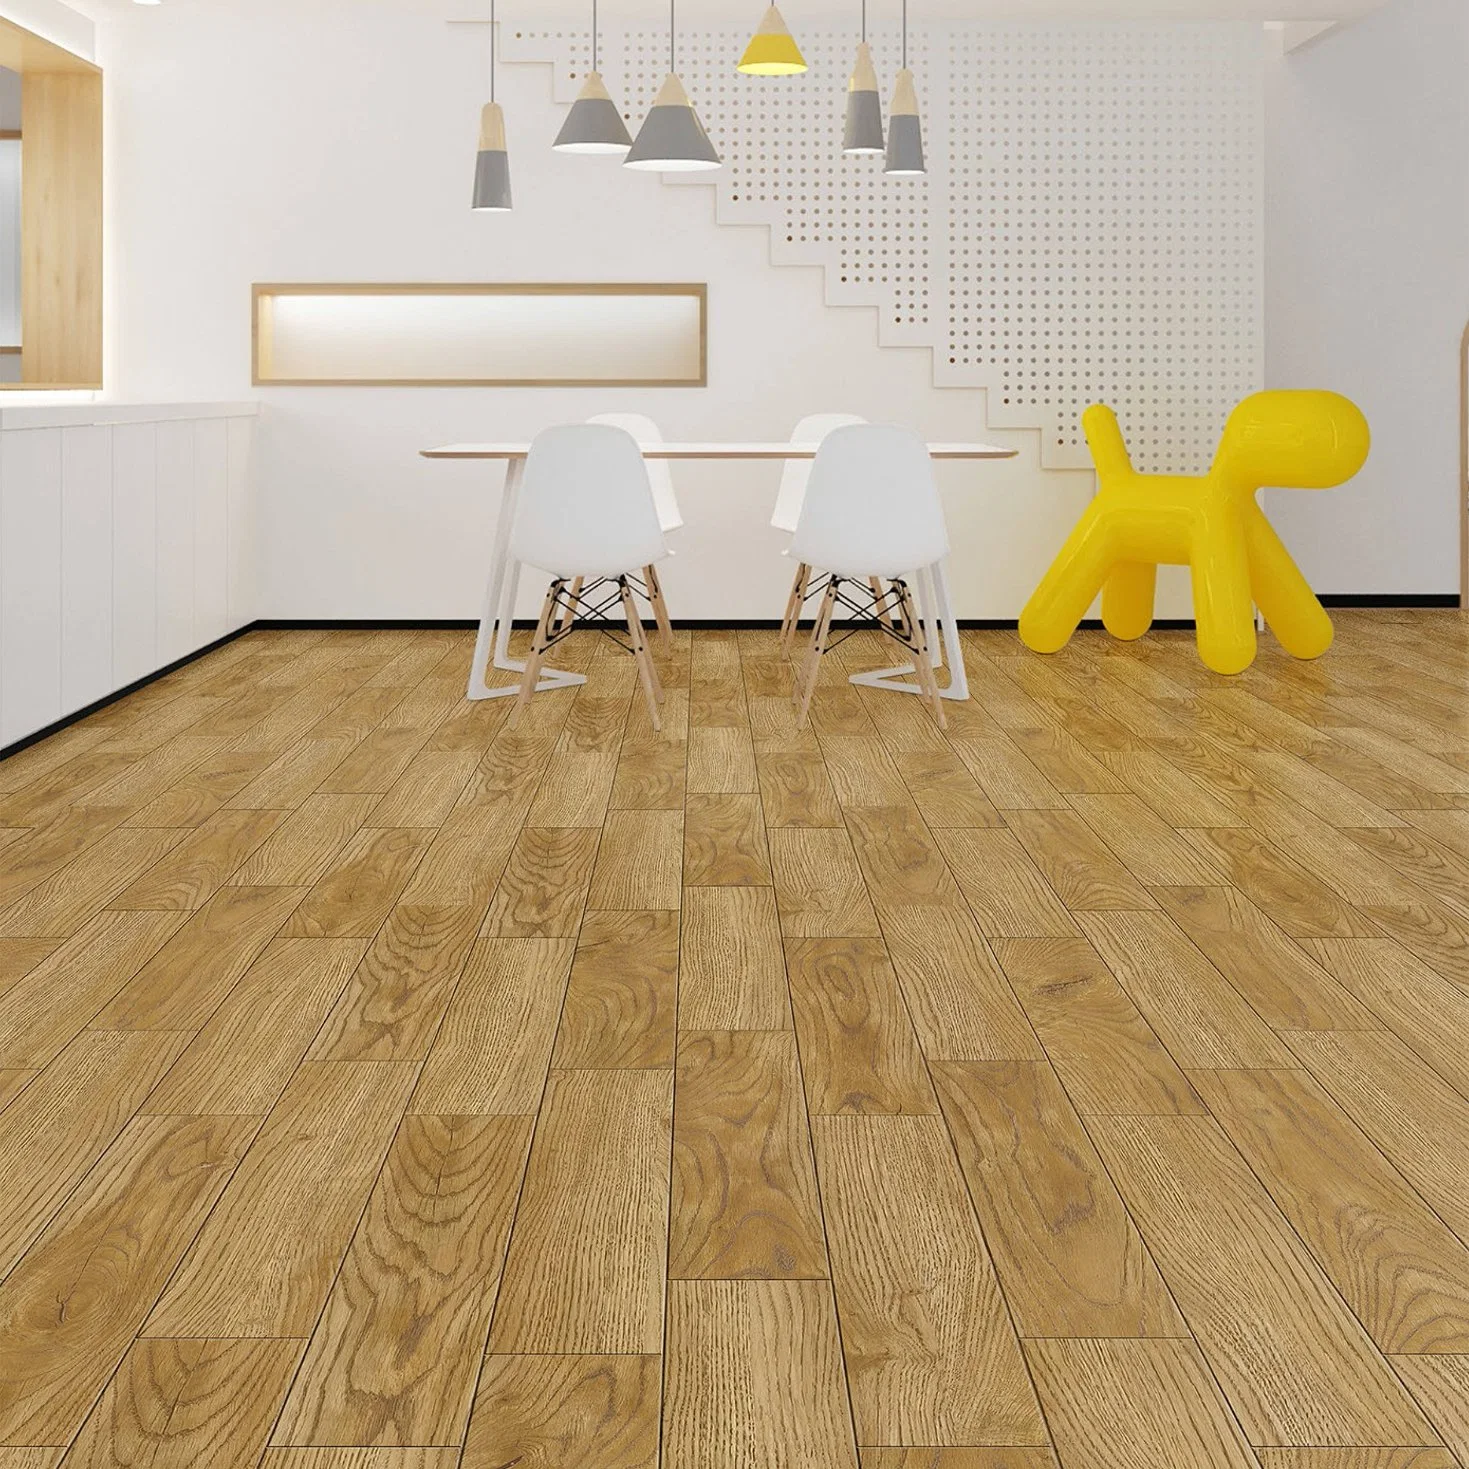 Vente en gros LVT WPC de luxe, revêtement de sol en vinyle durable imperméable intérieur Carreaux de plancher en composite bois-plastique